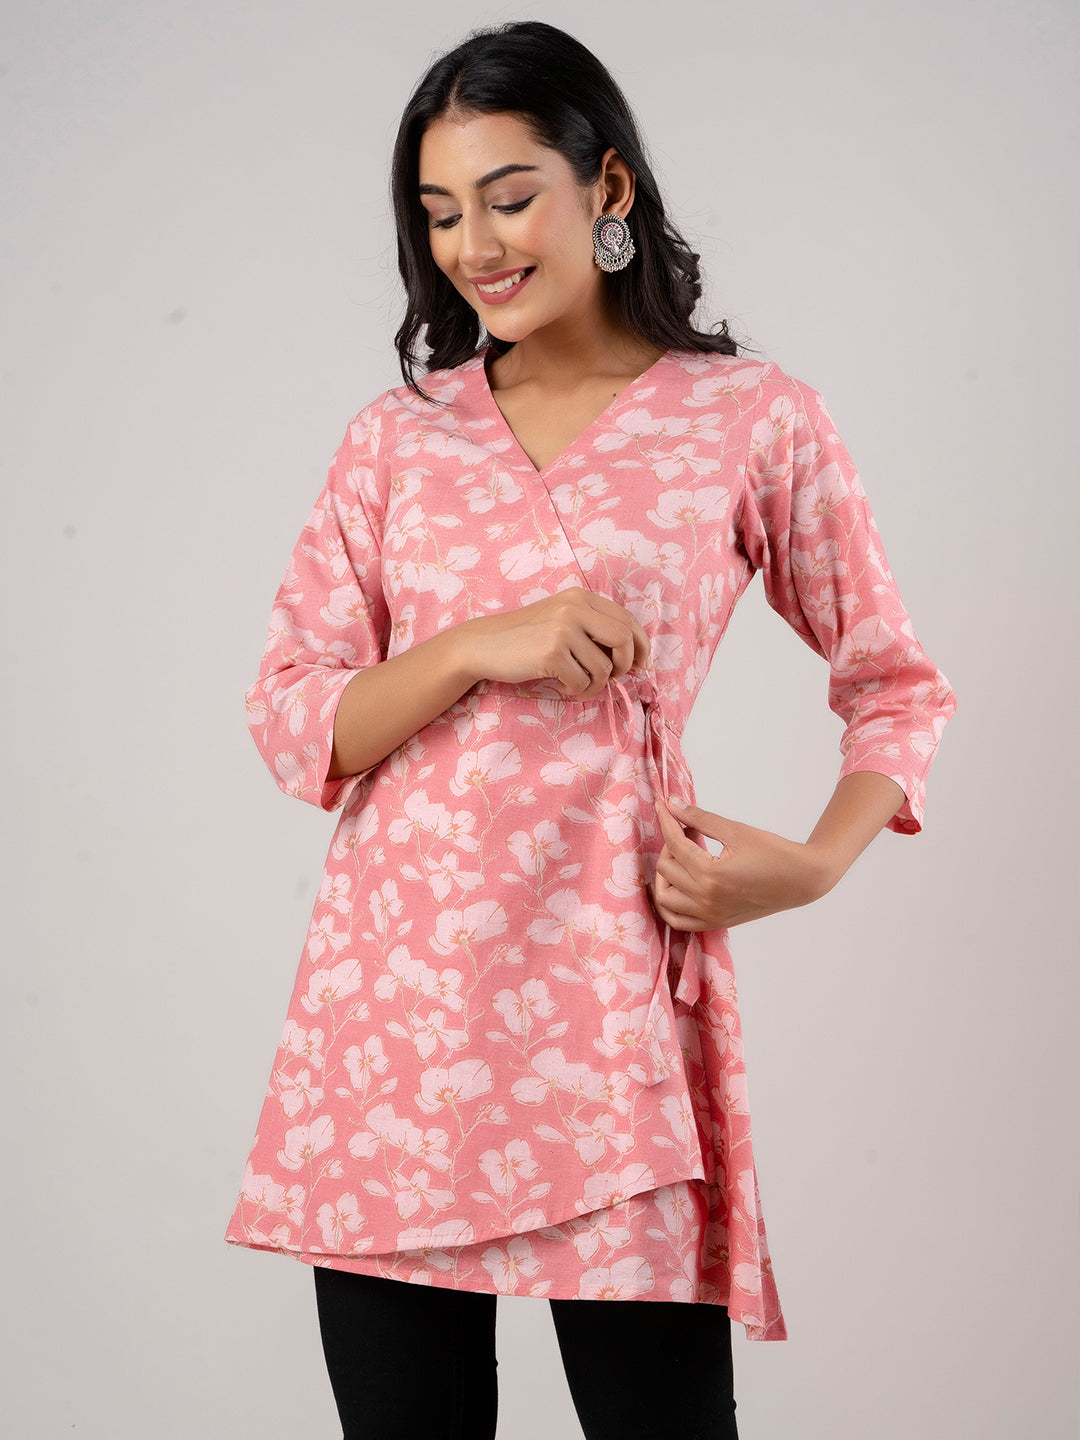 Cotton Printed Pink Angrakha Short Tunic